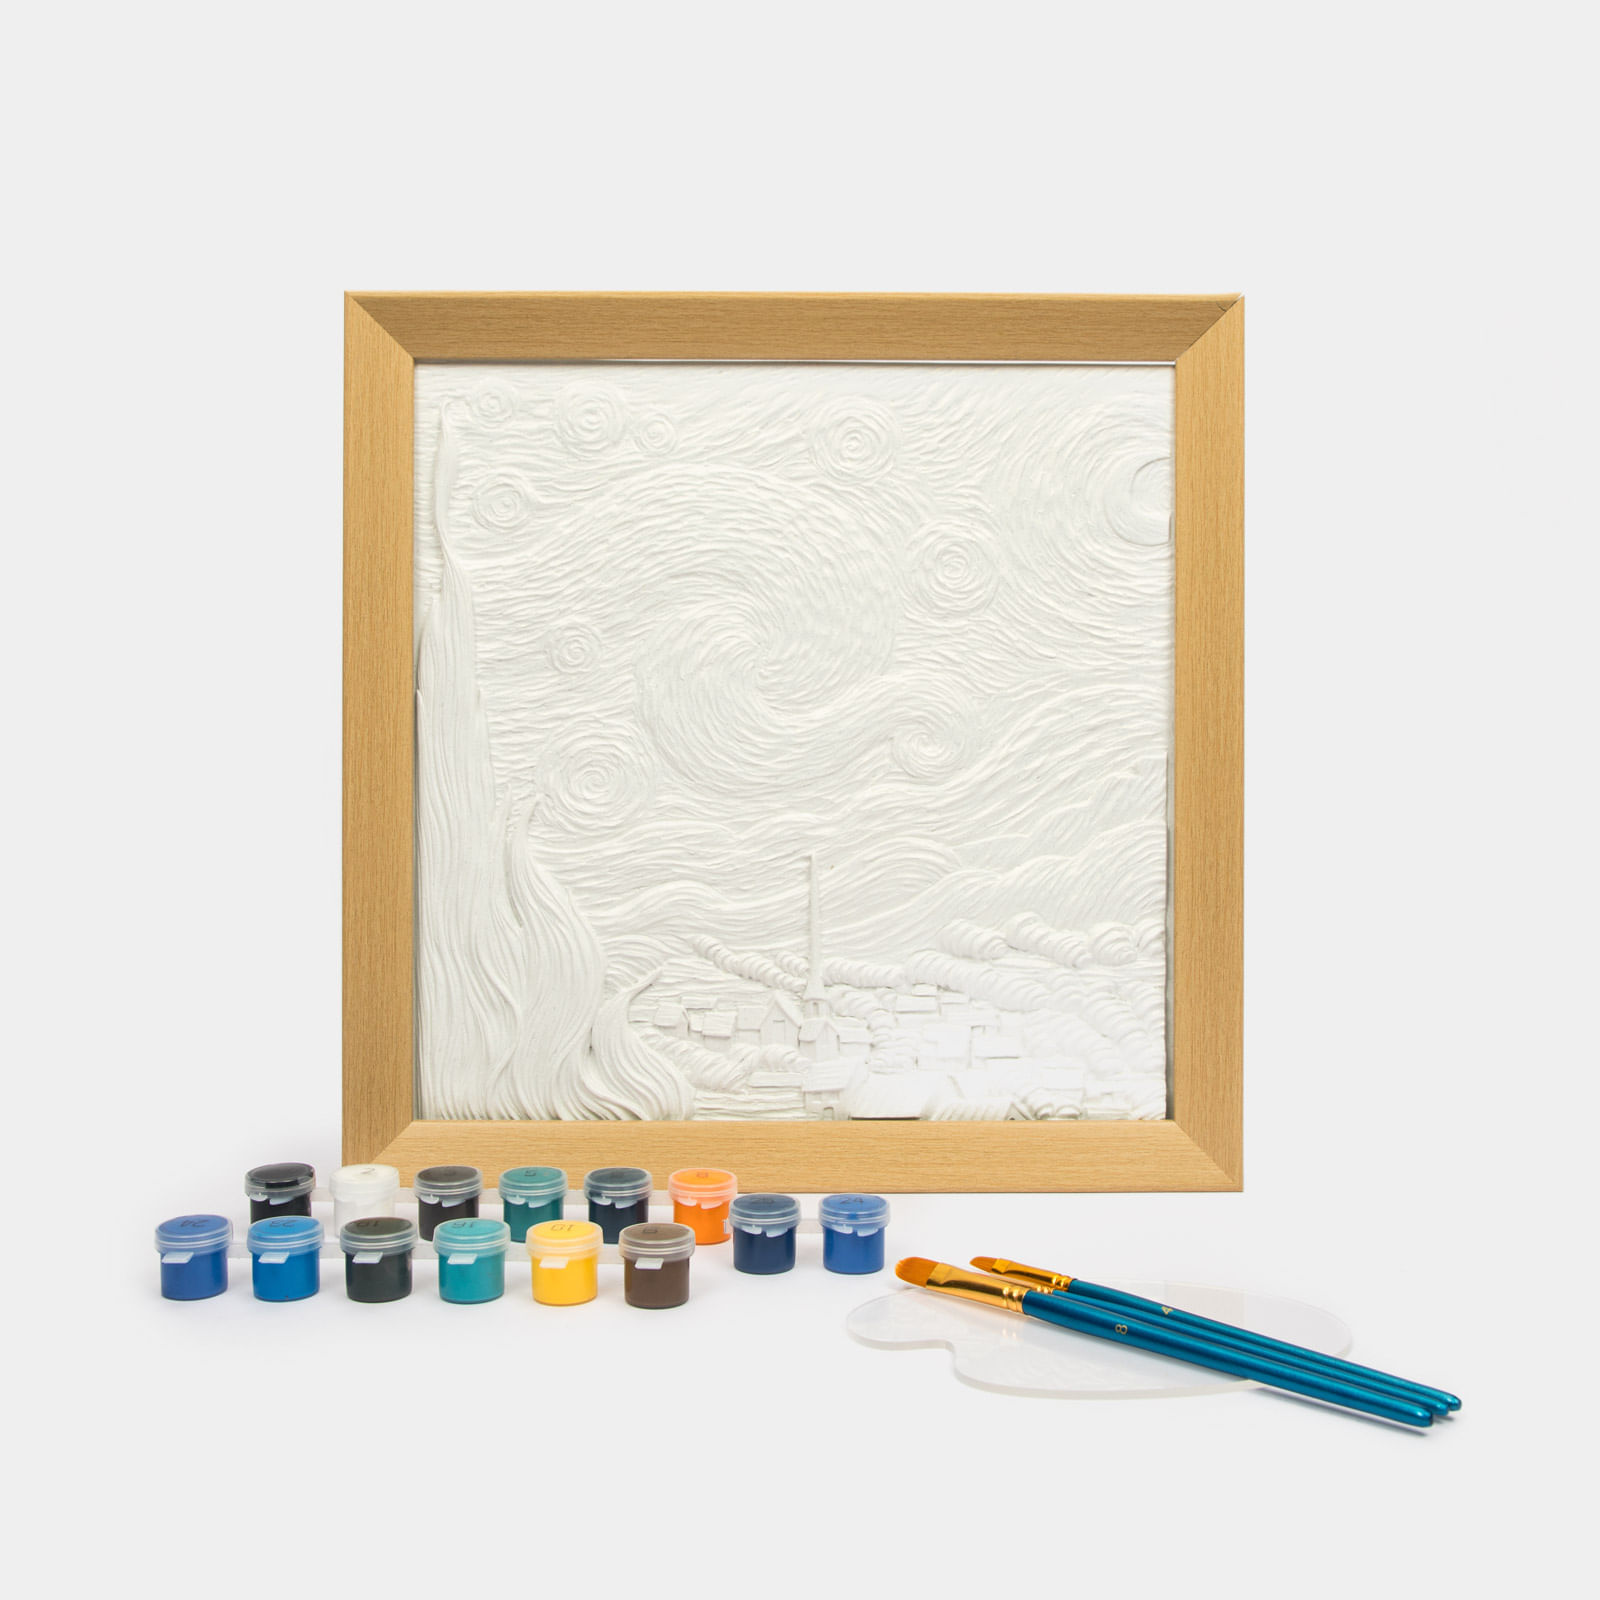 Kit de arte con cuadro de cerámica de 34 cm - paisaje 3D